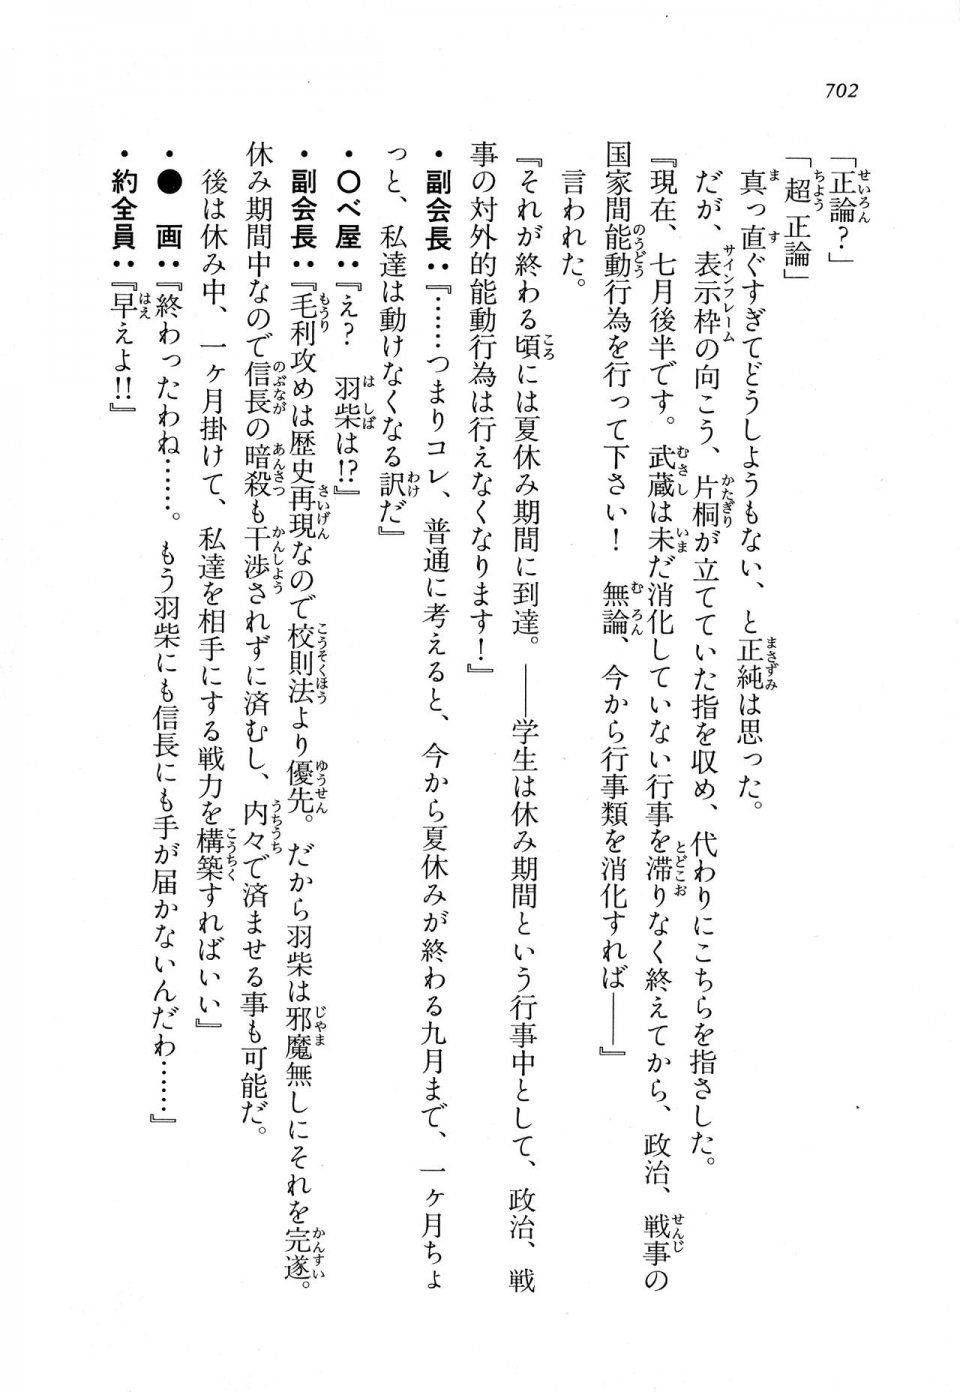 Kyoukai Senjou no Horizon LN Vol 11(5A) - Photo #702